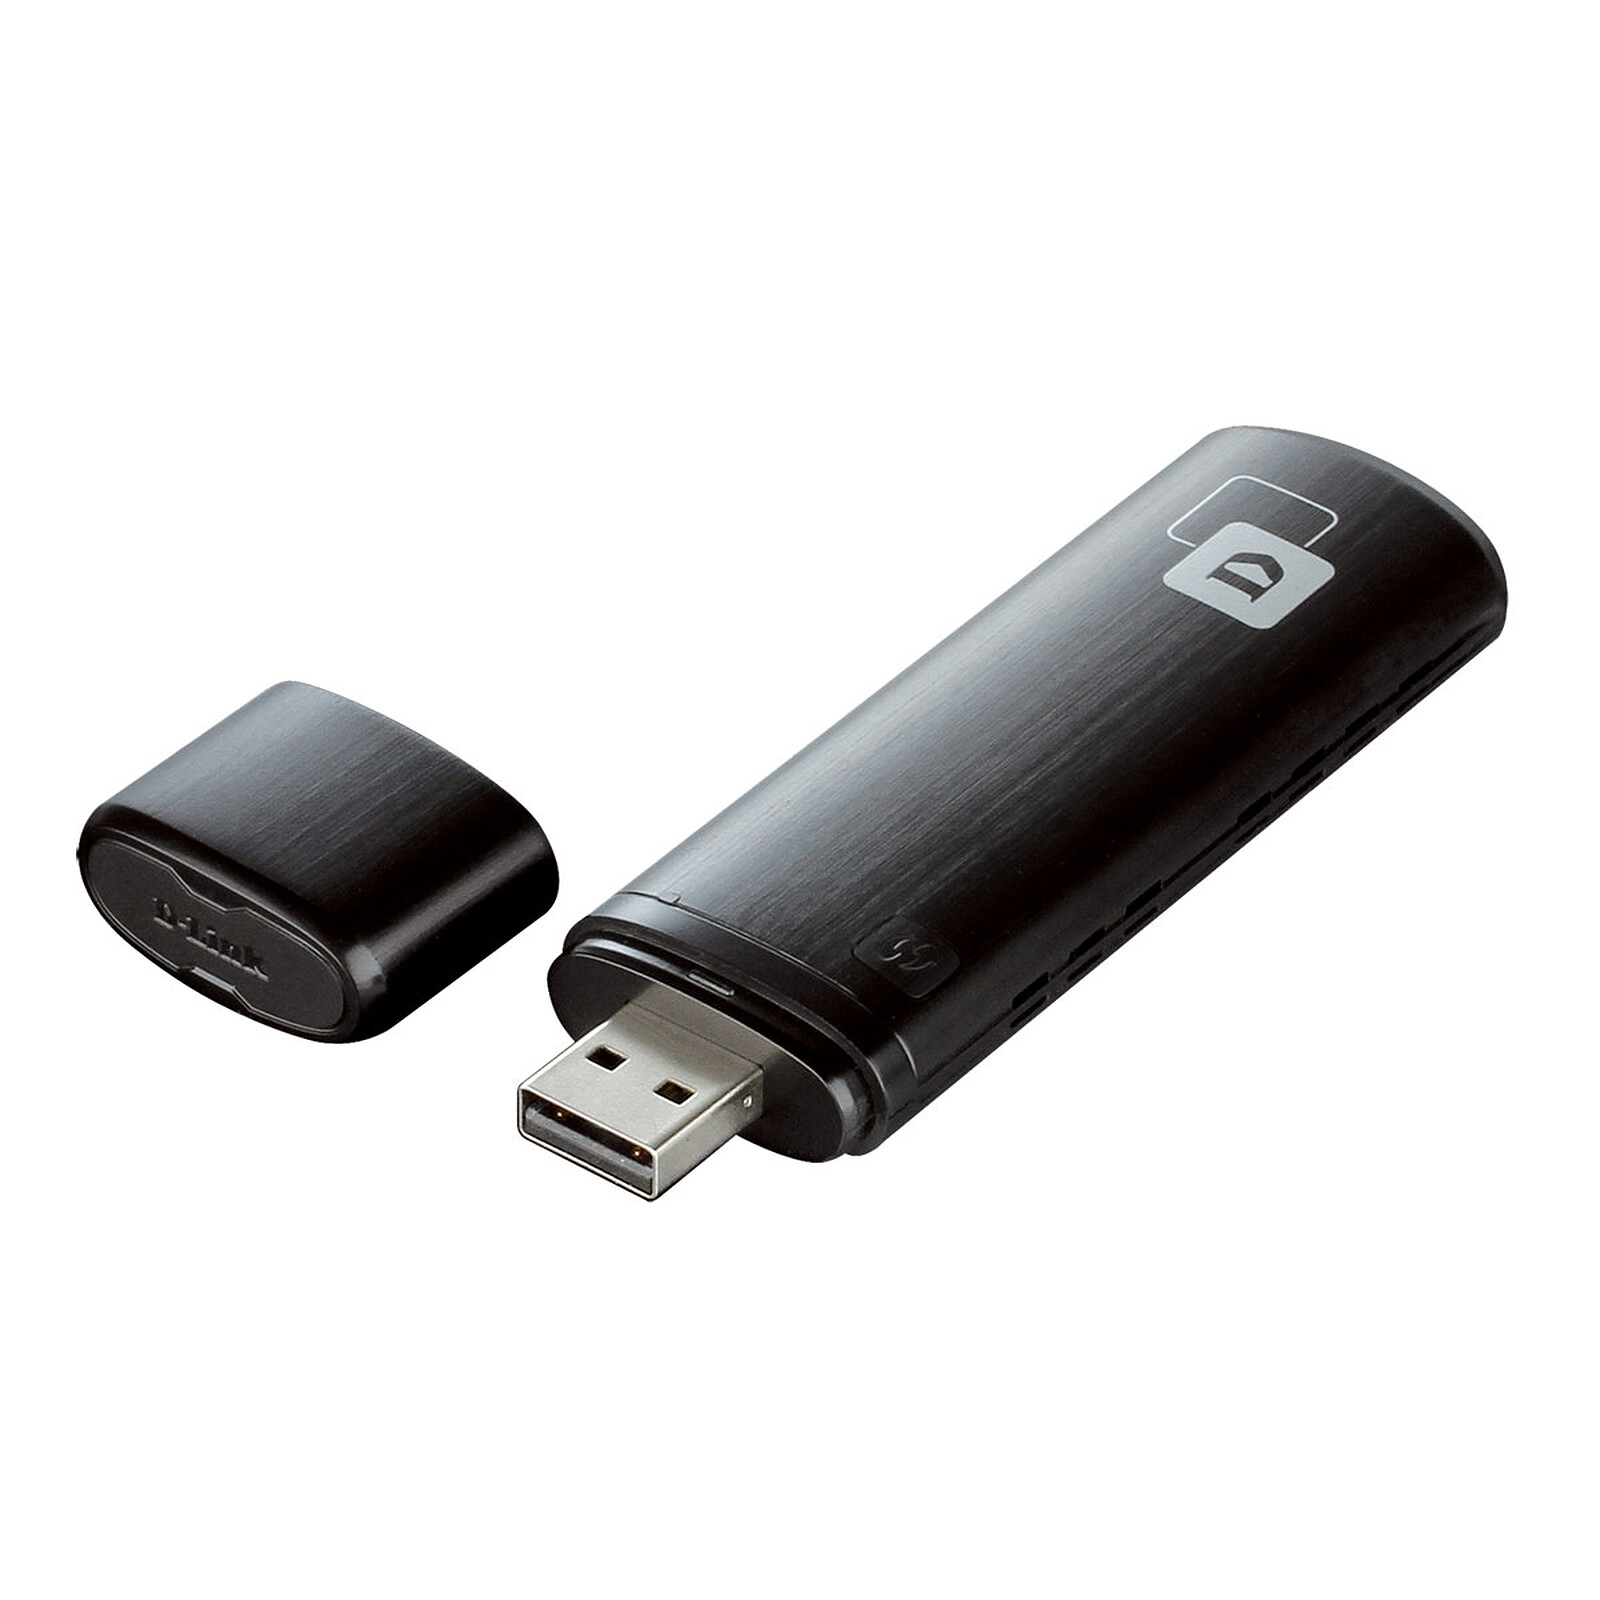 StarTech.com Clé USB 2.0 WiFi 802.11n 2T2R - Carte réseau